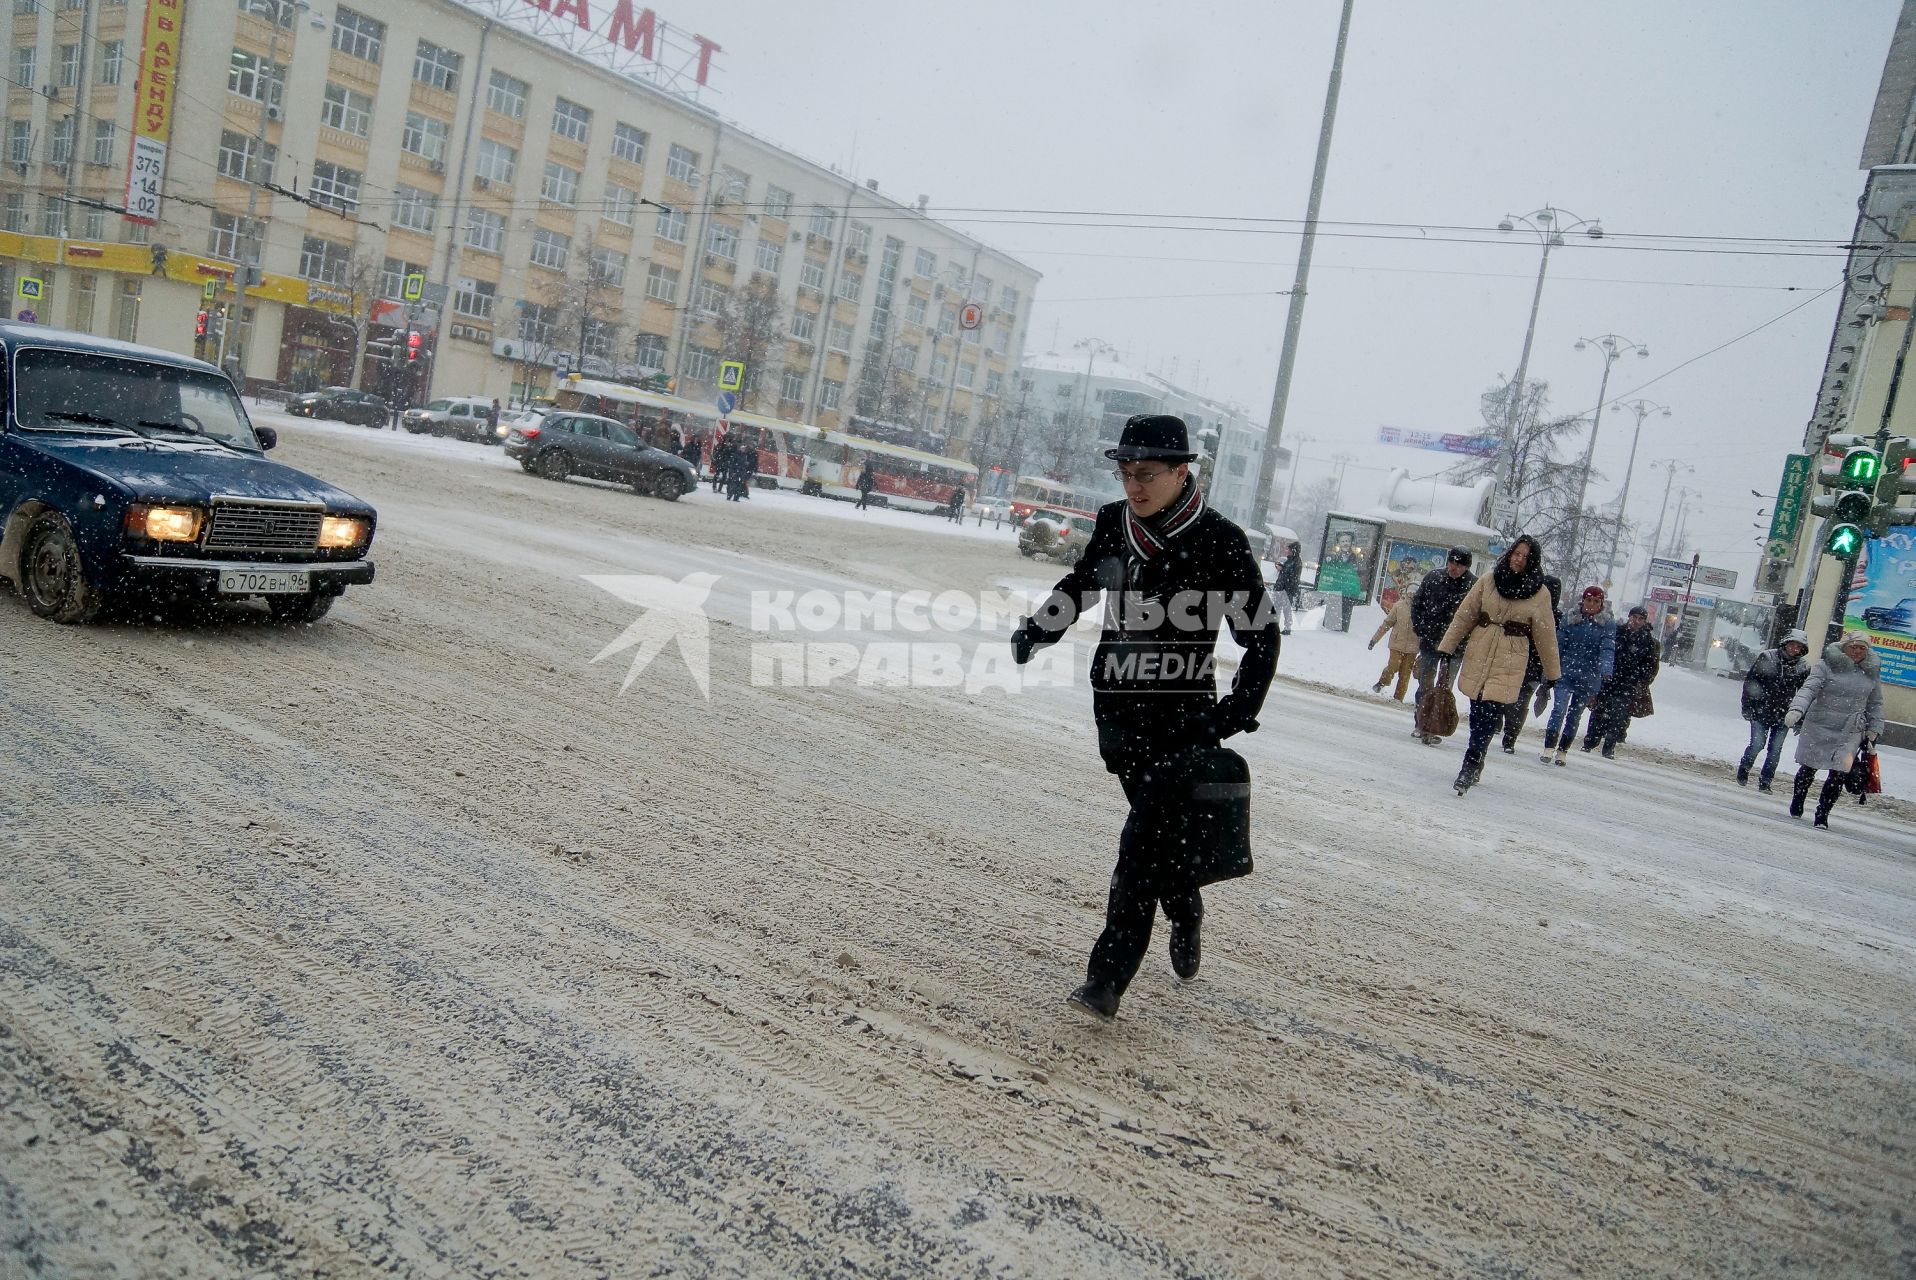 Снегопад в Екатеринбурге. На снимке: пешеходы переходят улицу по пешеходному переходу.